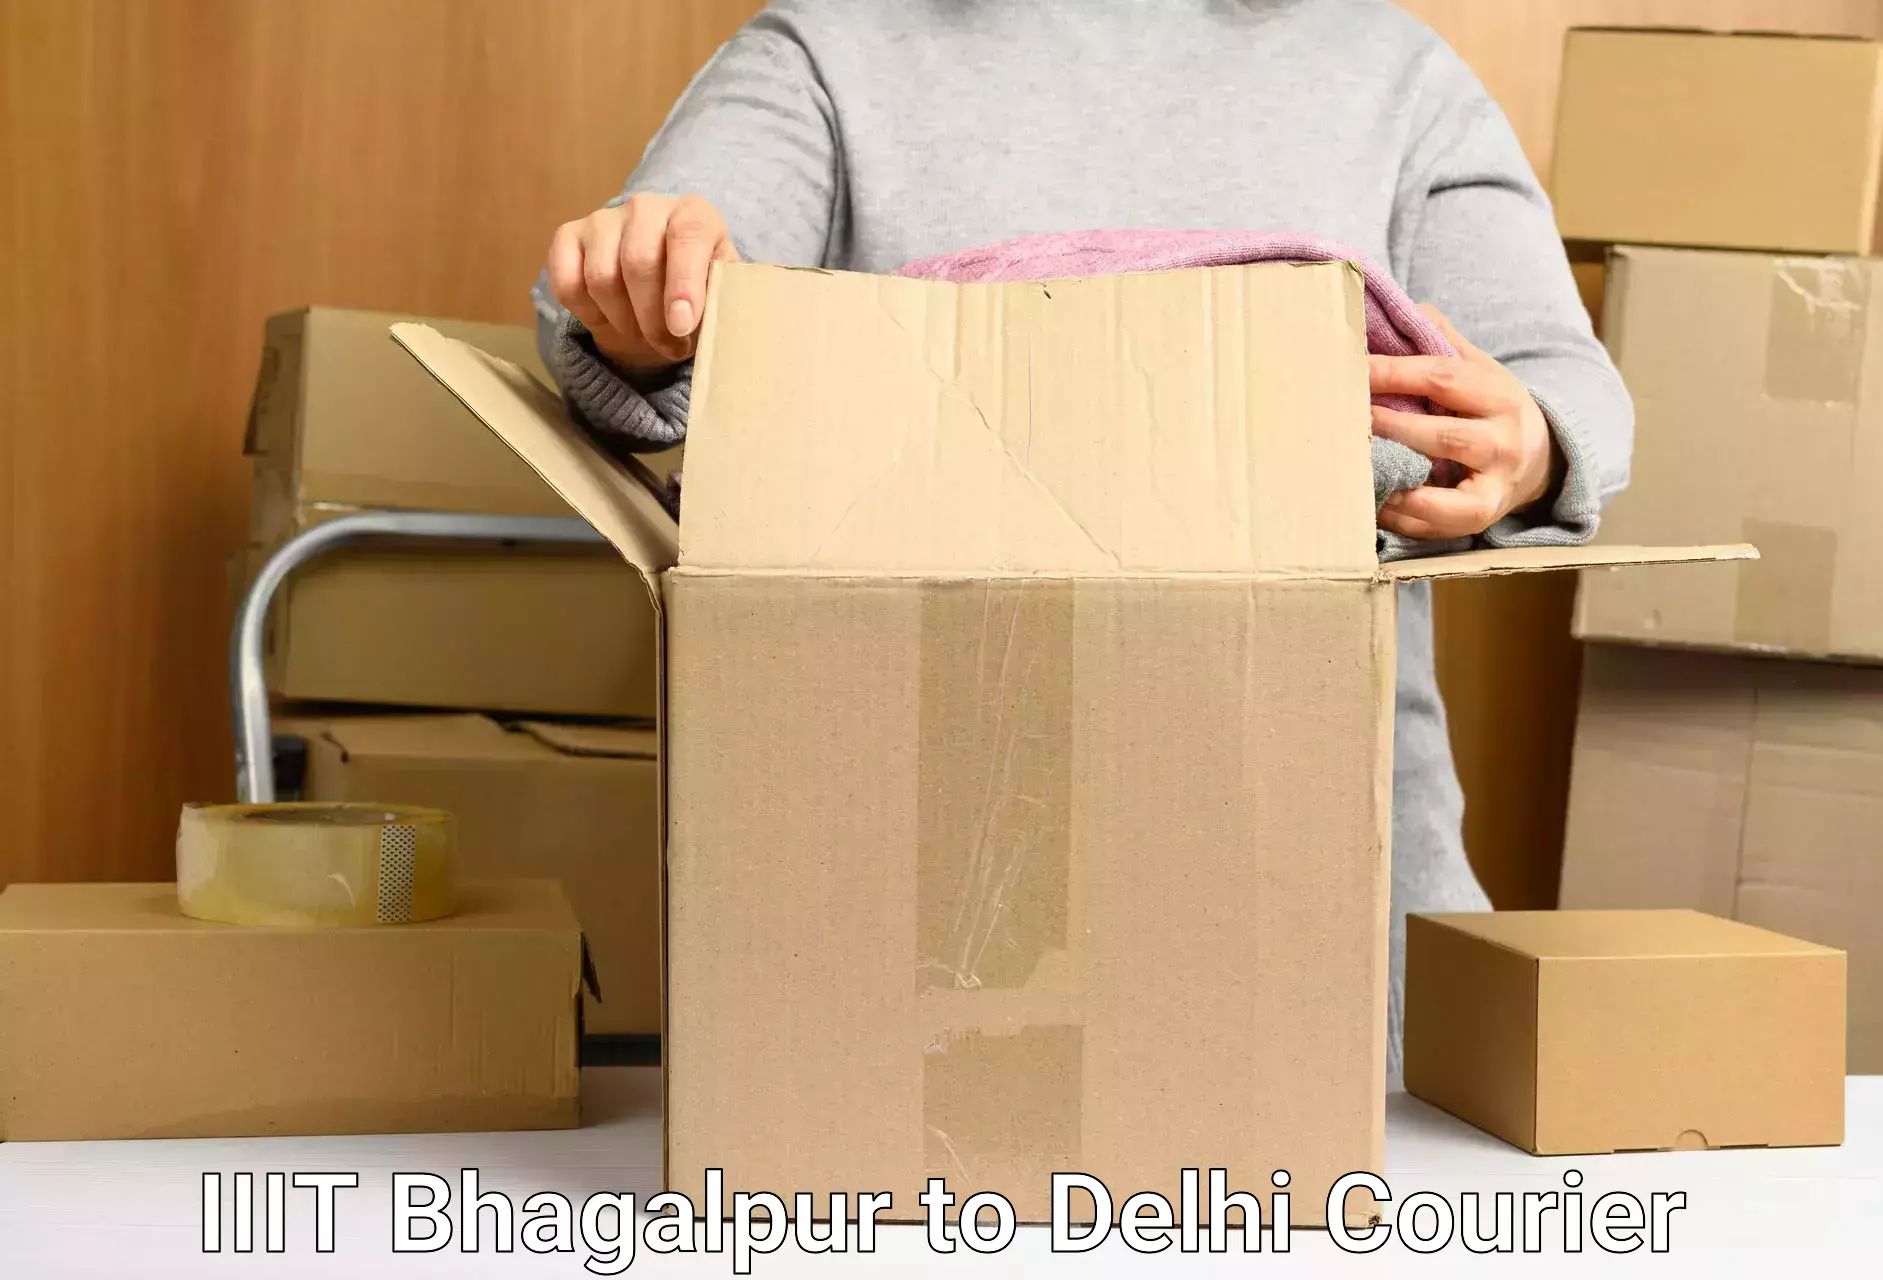 Doorstep delivery service IIIT Bhagalpur to Delhi